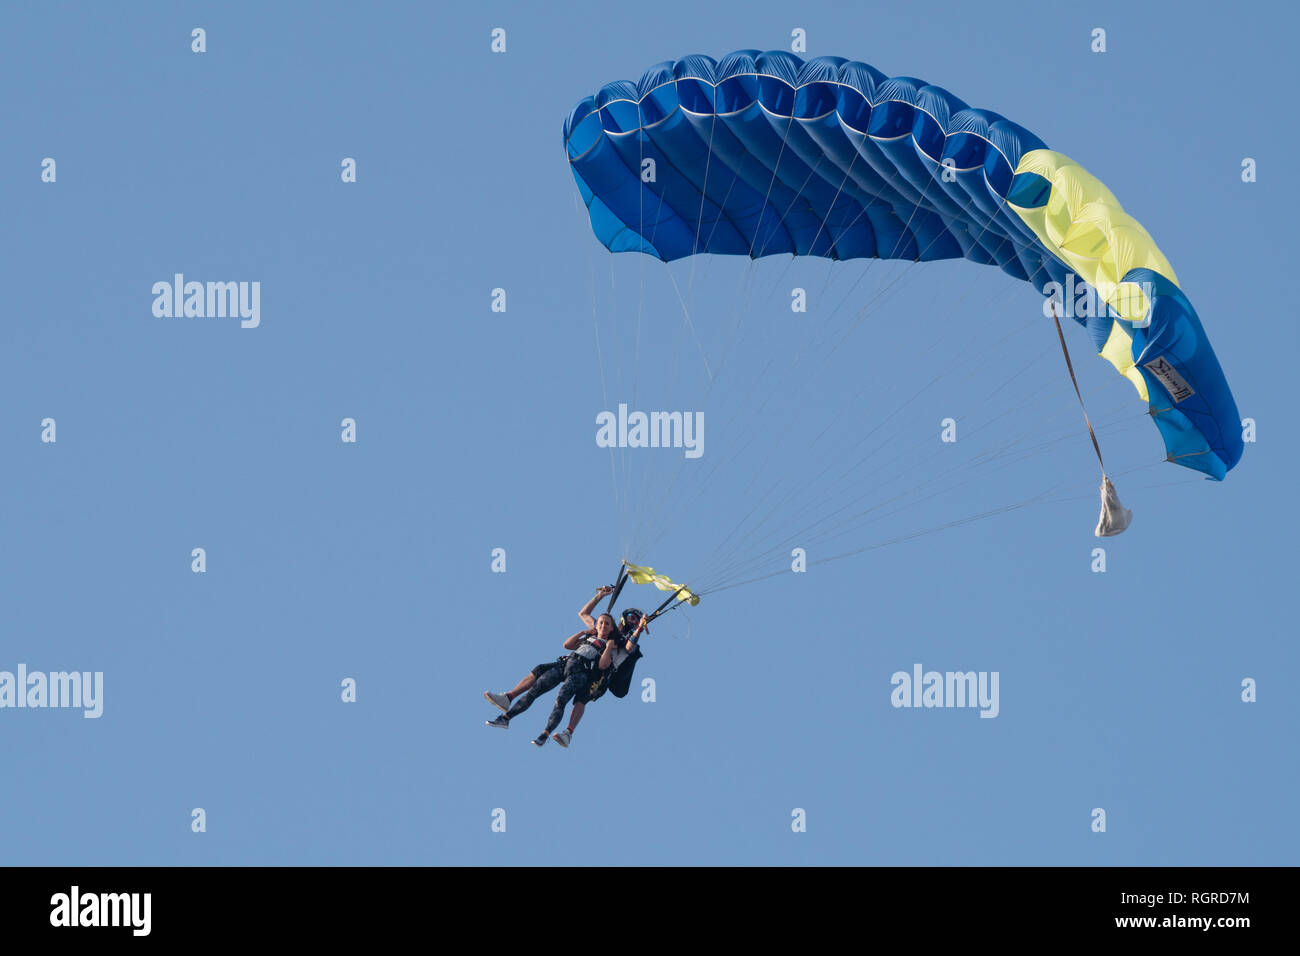 Dubaï, Émirats arabes unis - 16 Février 2018 : Tandem skydivers effectuant le parachutisme avec des parachutes et bleu ciel ouvert À DUBAÏ, ÉMIRATS ARABES UNIS Banque D'Images